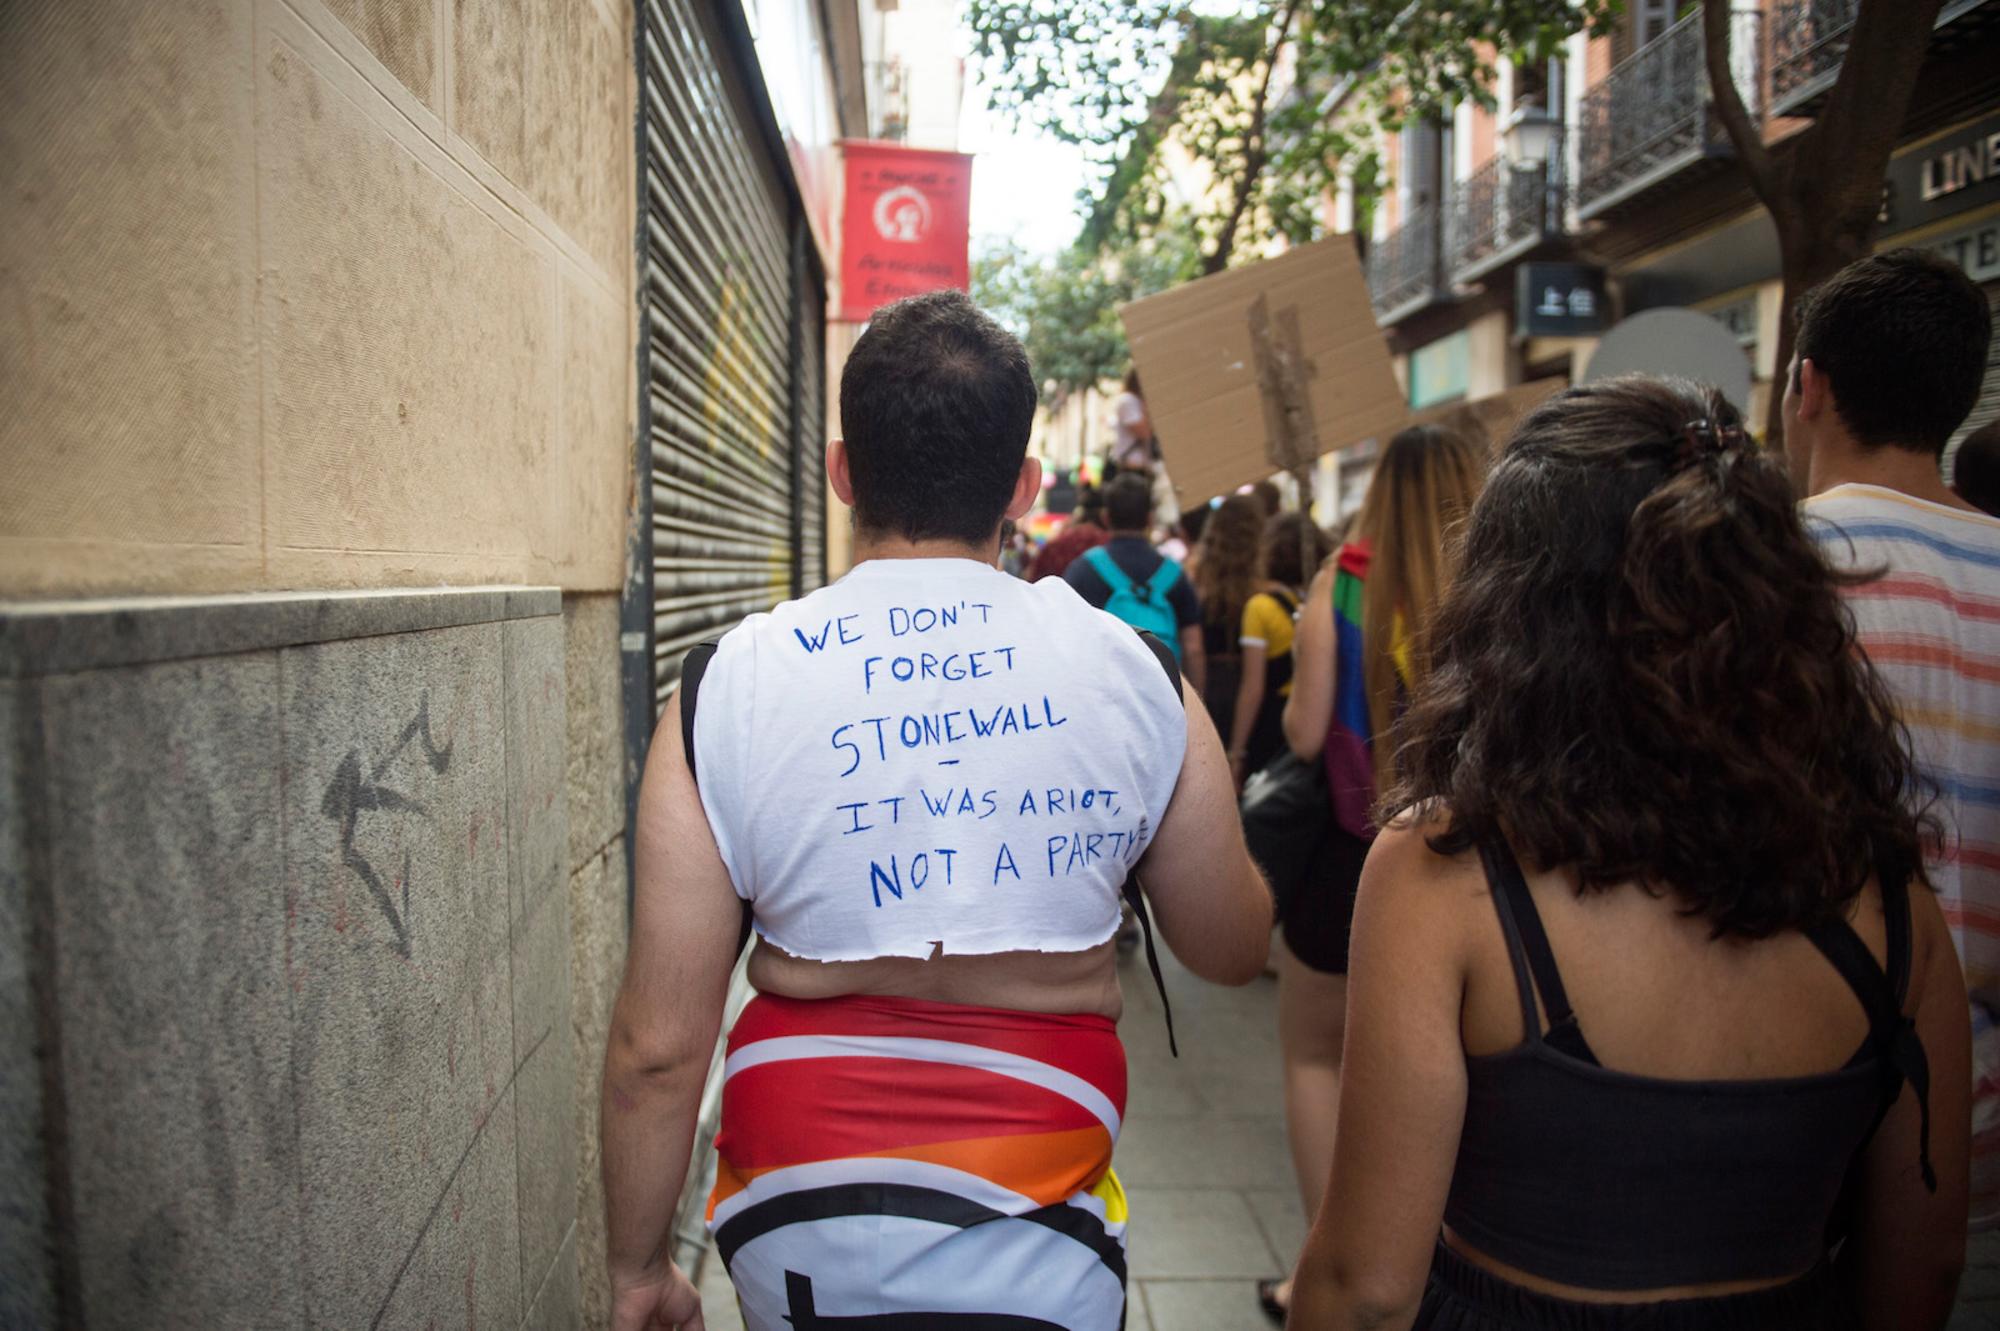 Orgullo crítico en Madrid 28 de junio de 2017